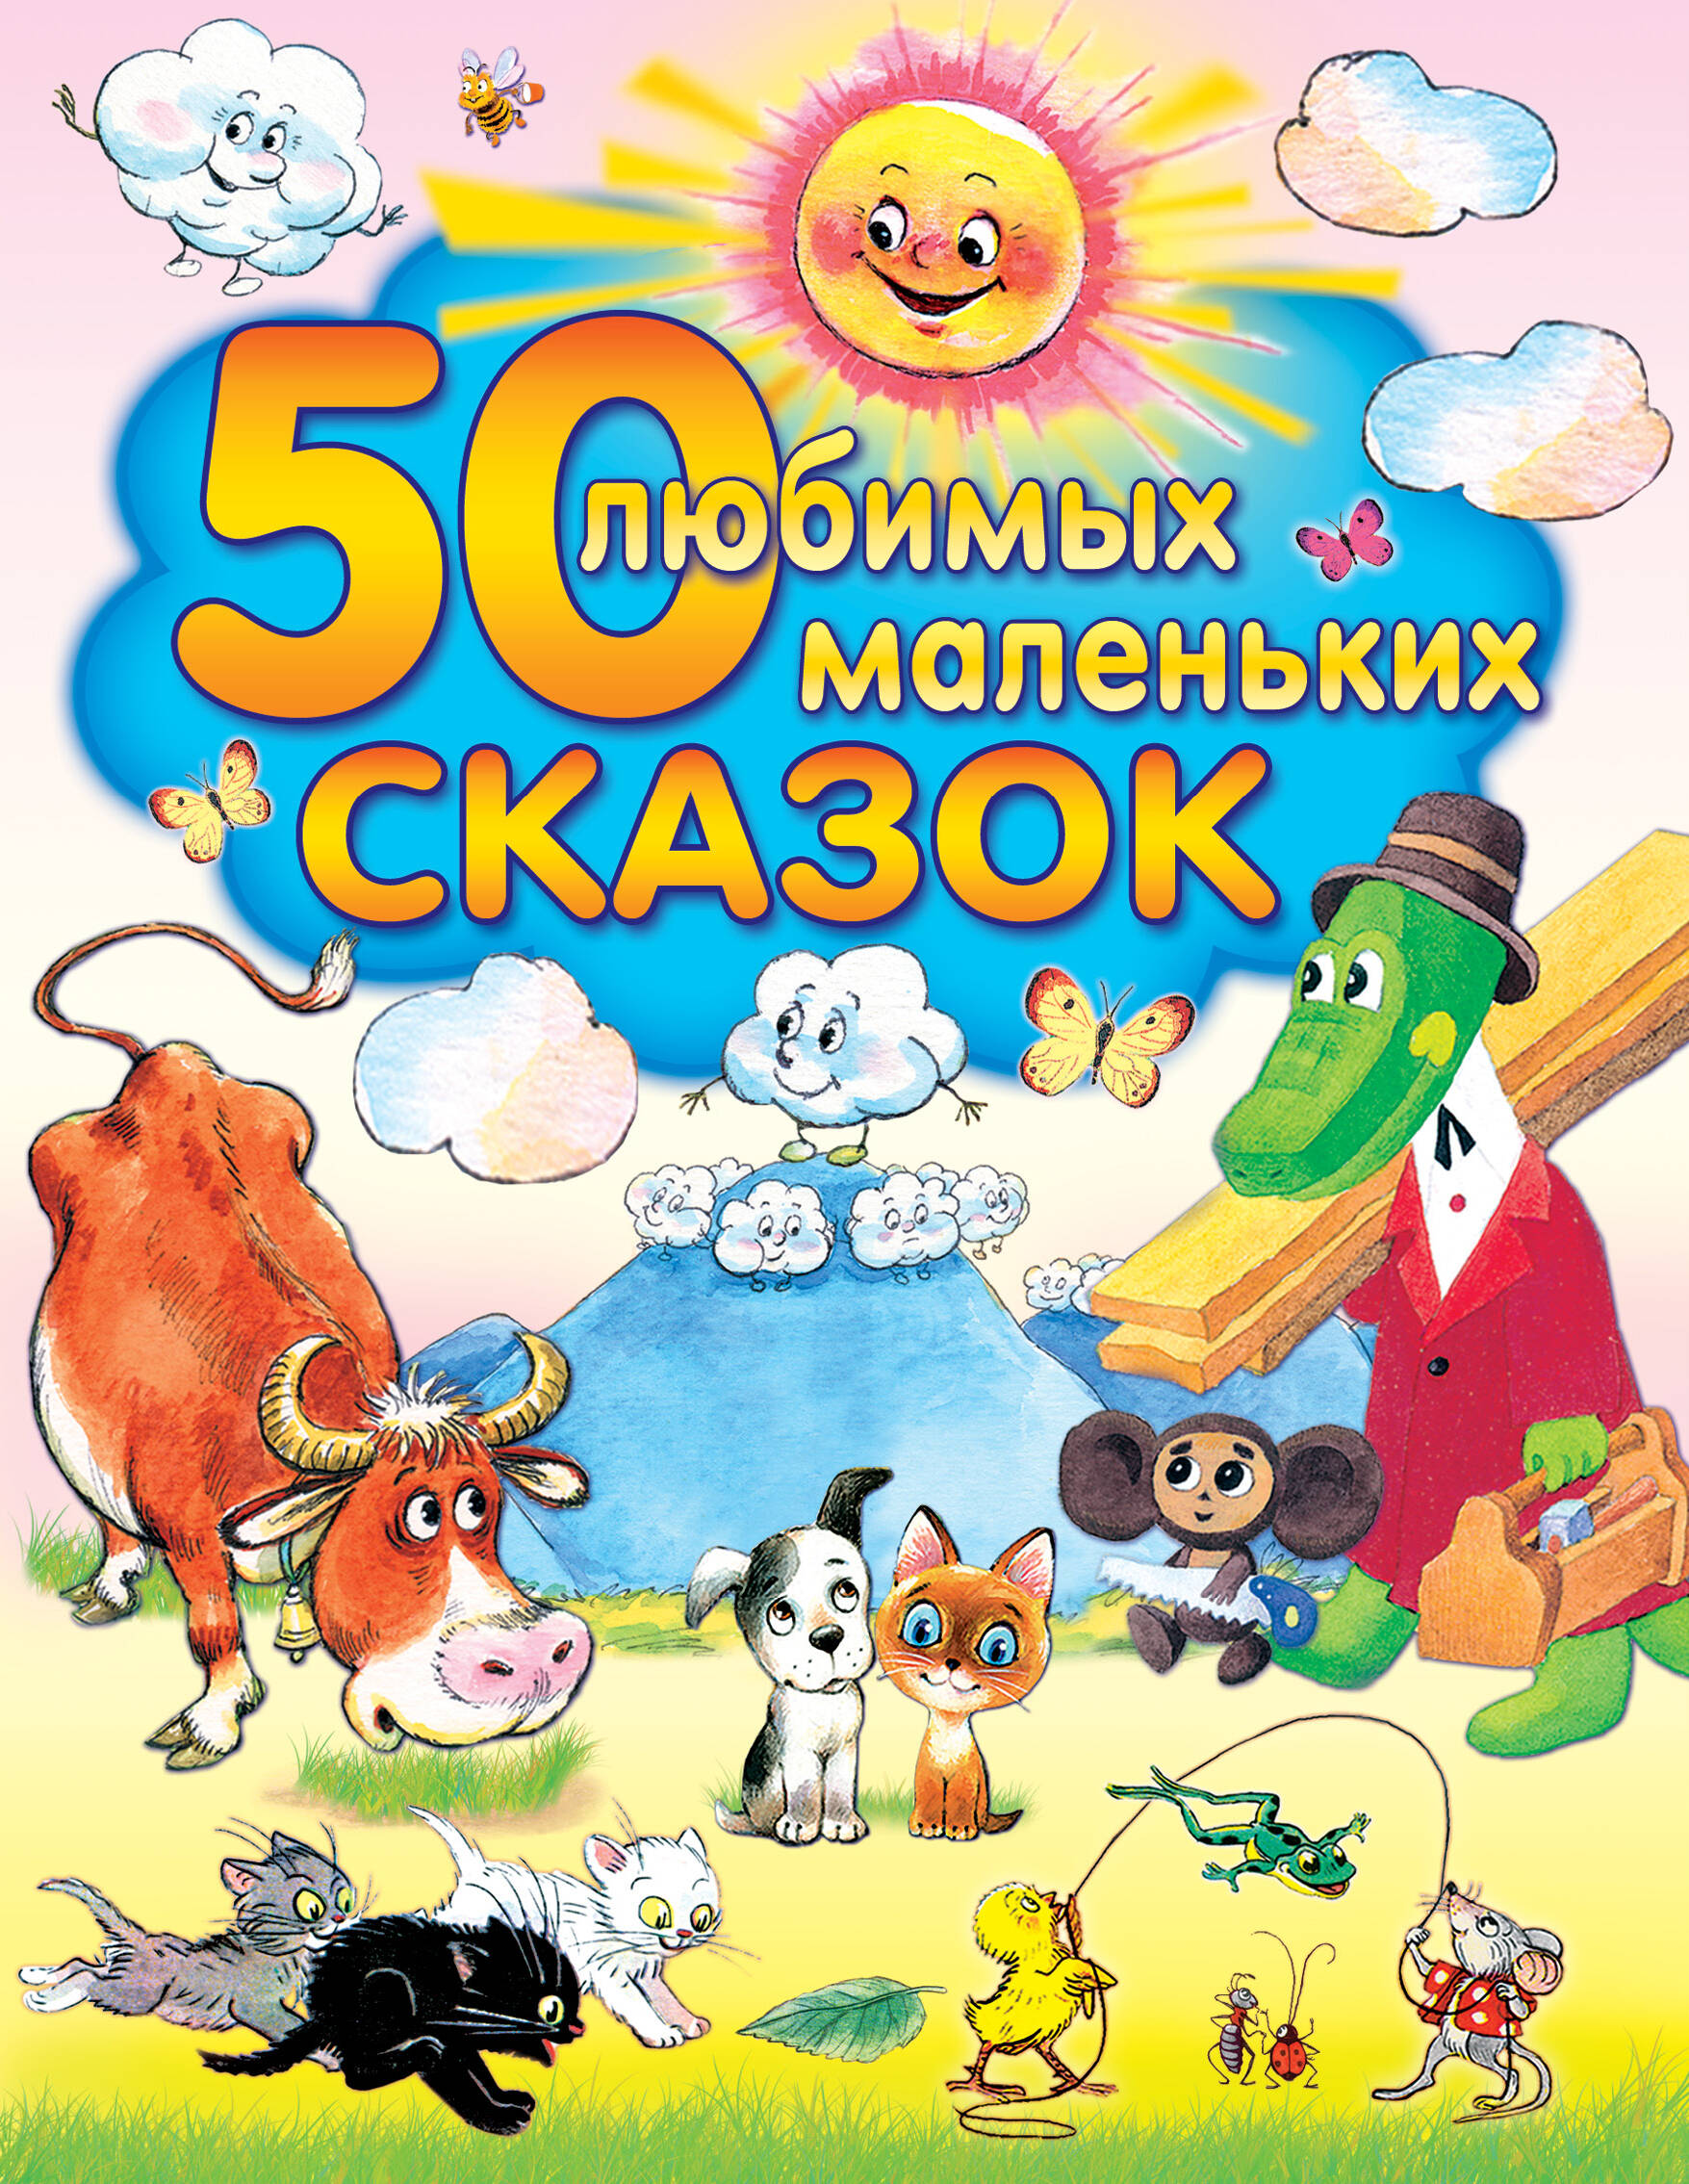 Толстой Алексей Николаевич 50 любимых маленьких сказок толстой алексей николаевич 50 любимых маленьких сказок